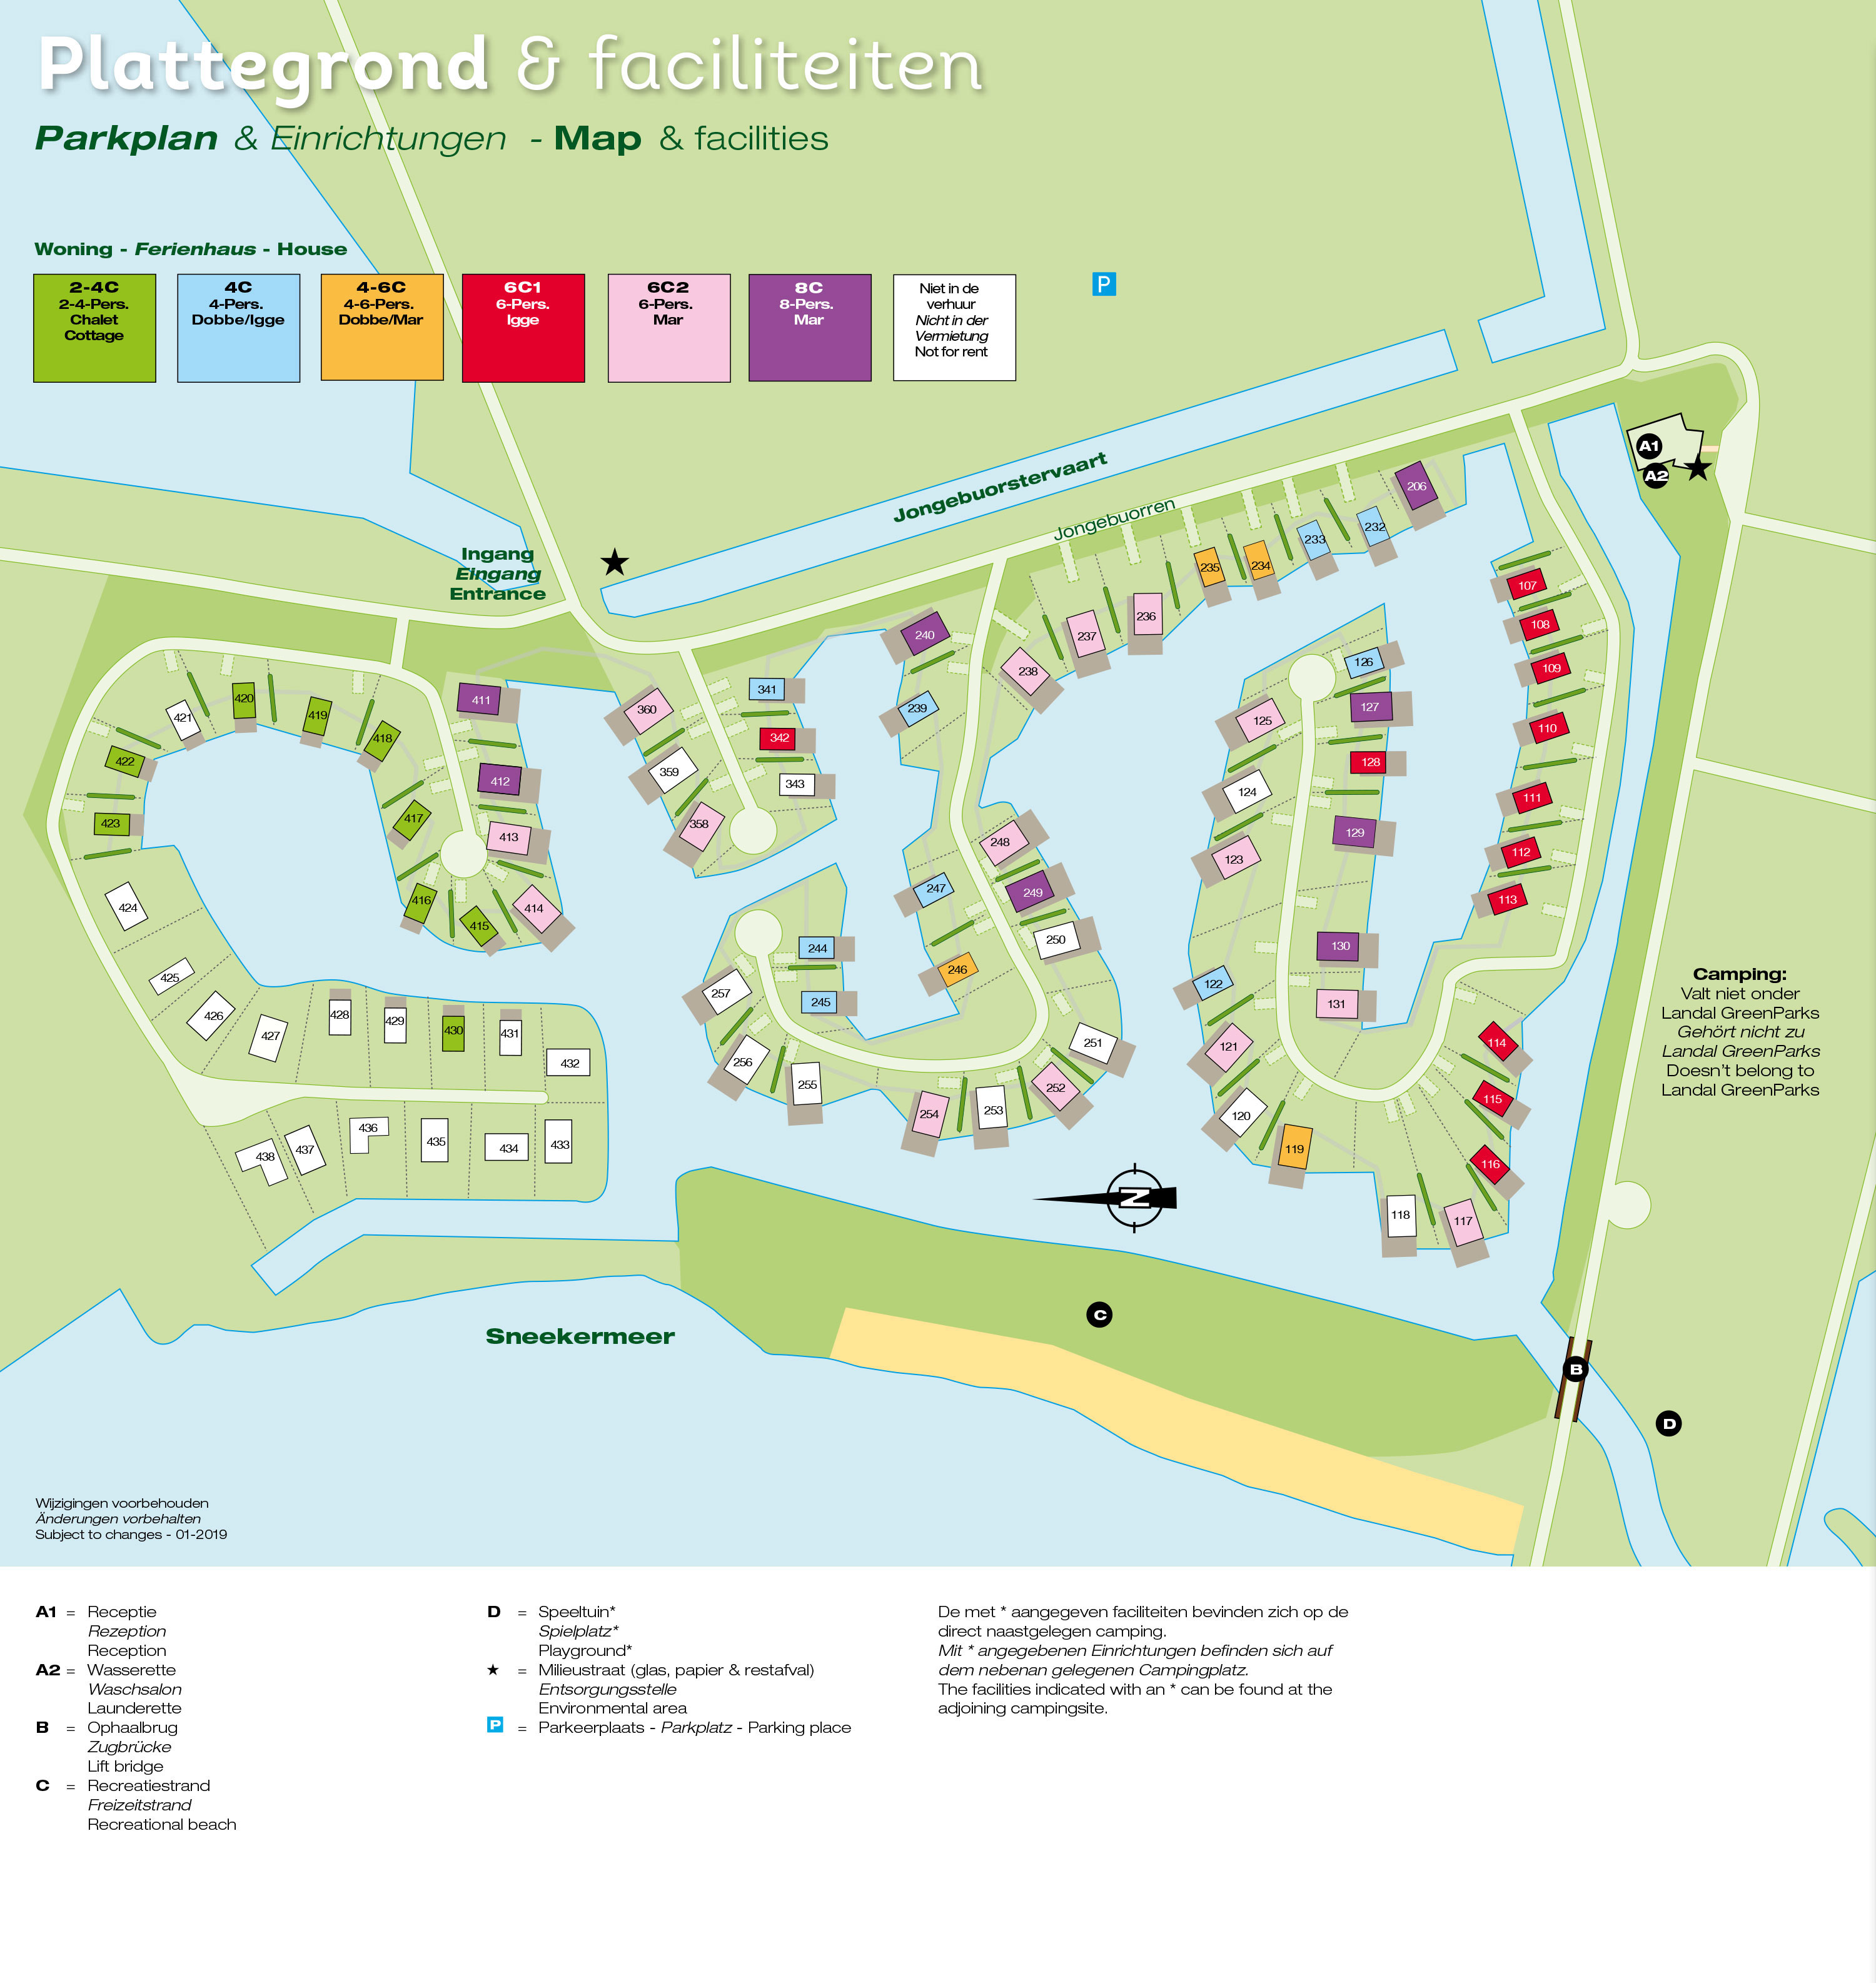 Plattegrond Landal Waterpark Sneekermeer